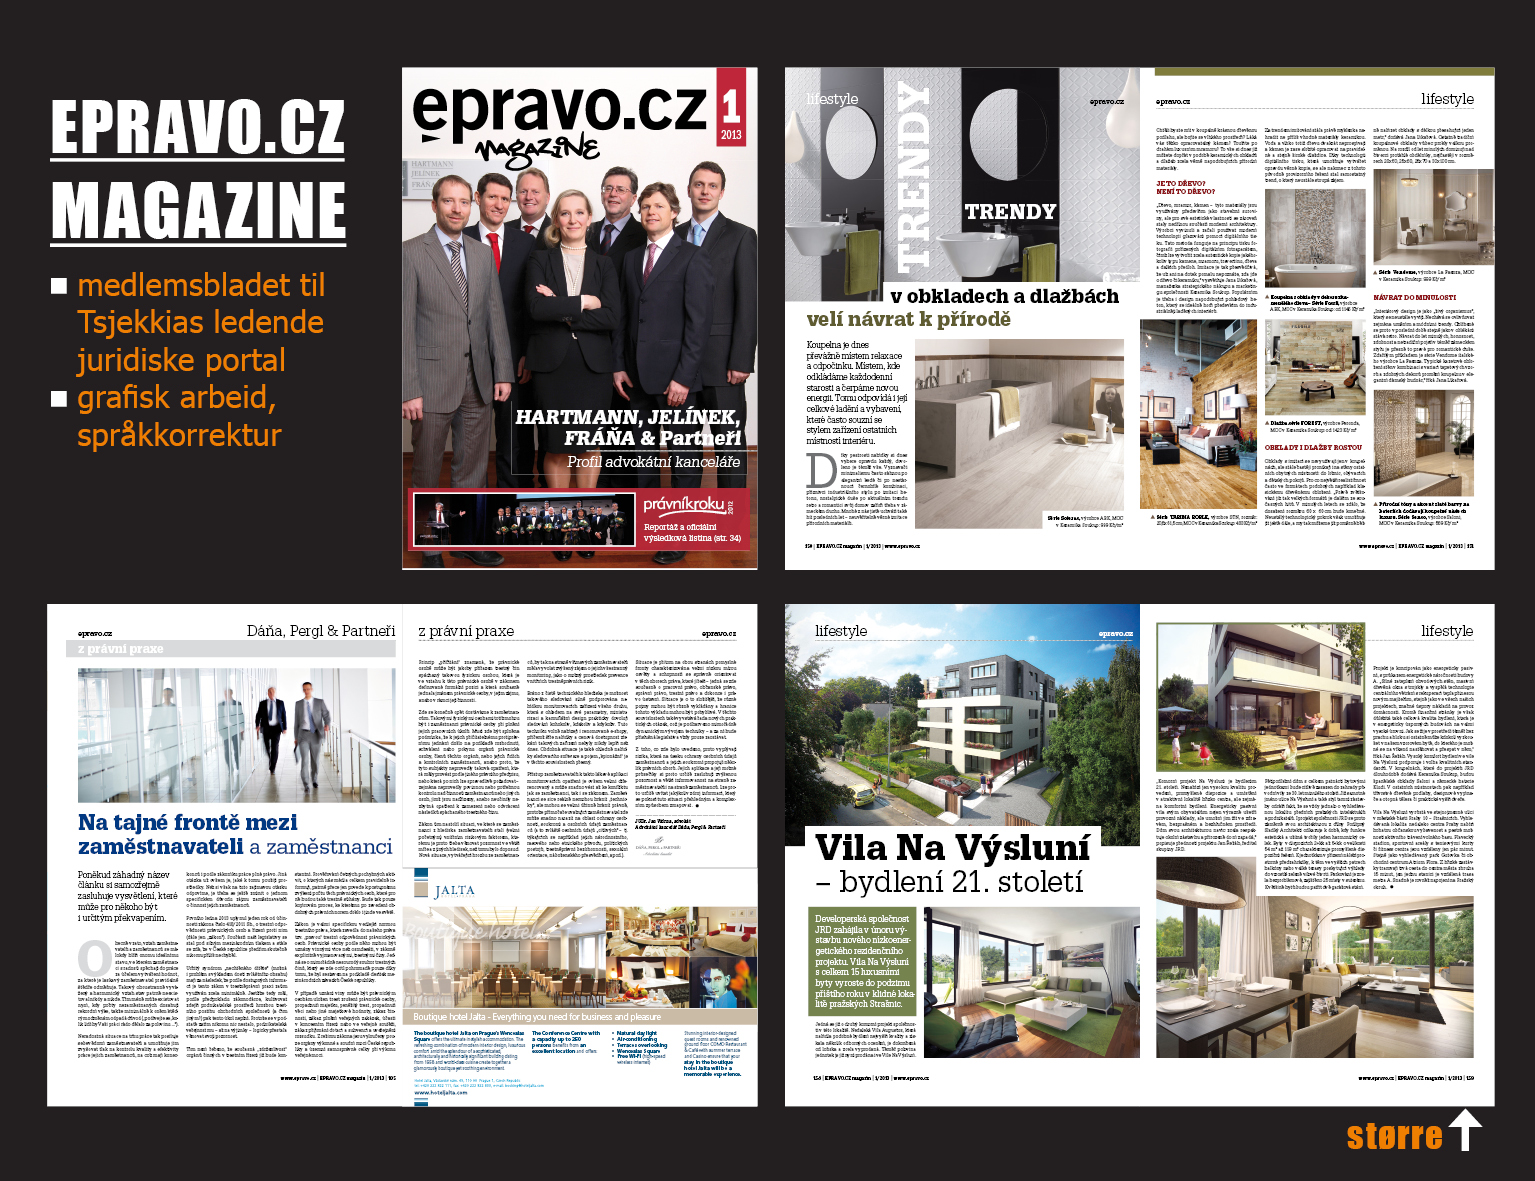 Medlemsbladet til Tsjekkias ledende juridiske portal EPRAVO.CZ